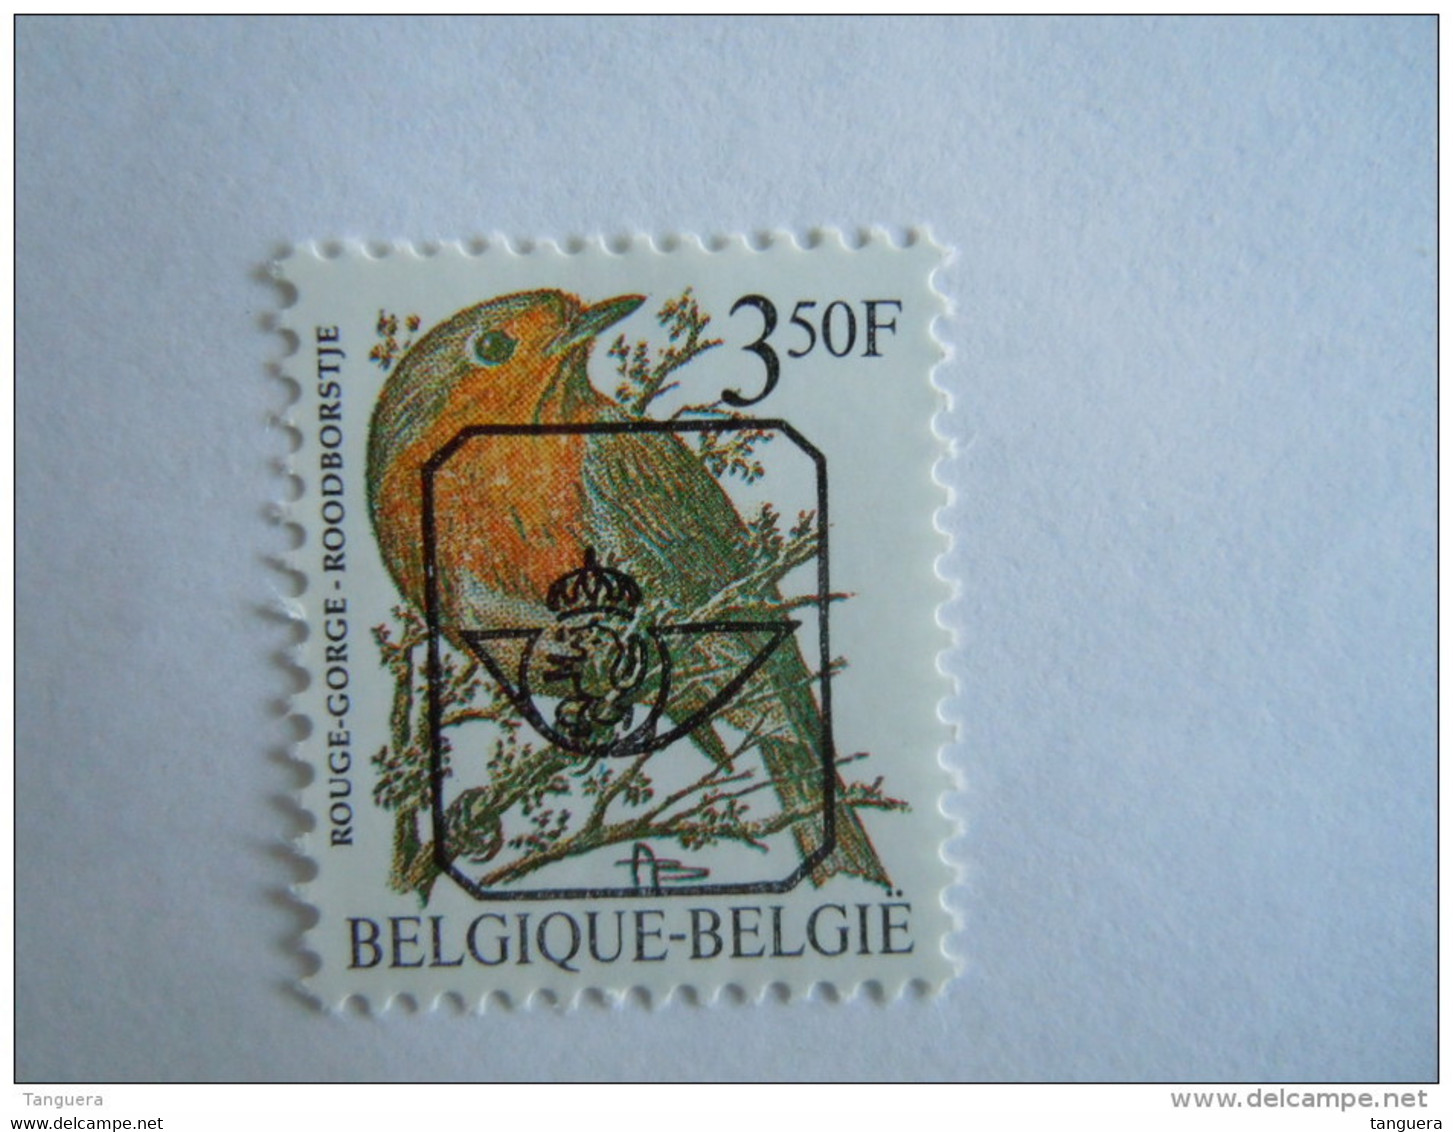 België Belgique Belgium 1986 Vogels Oiseaux Buzin Roodborstje Rouge-gorge Preo V822 GG MNH ** - Typos 1986-96 (Vögel)